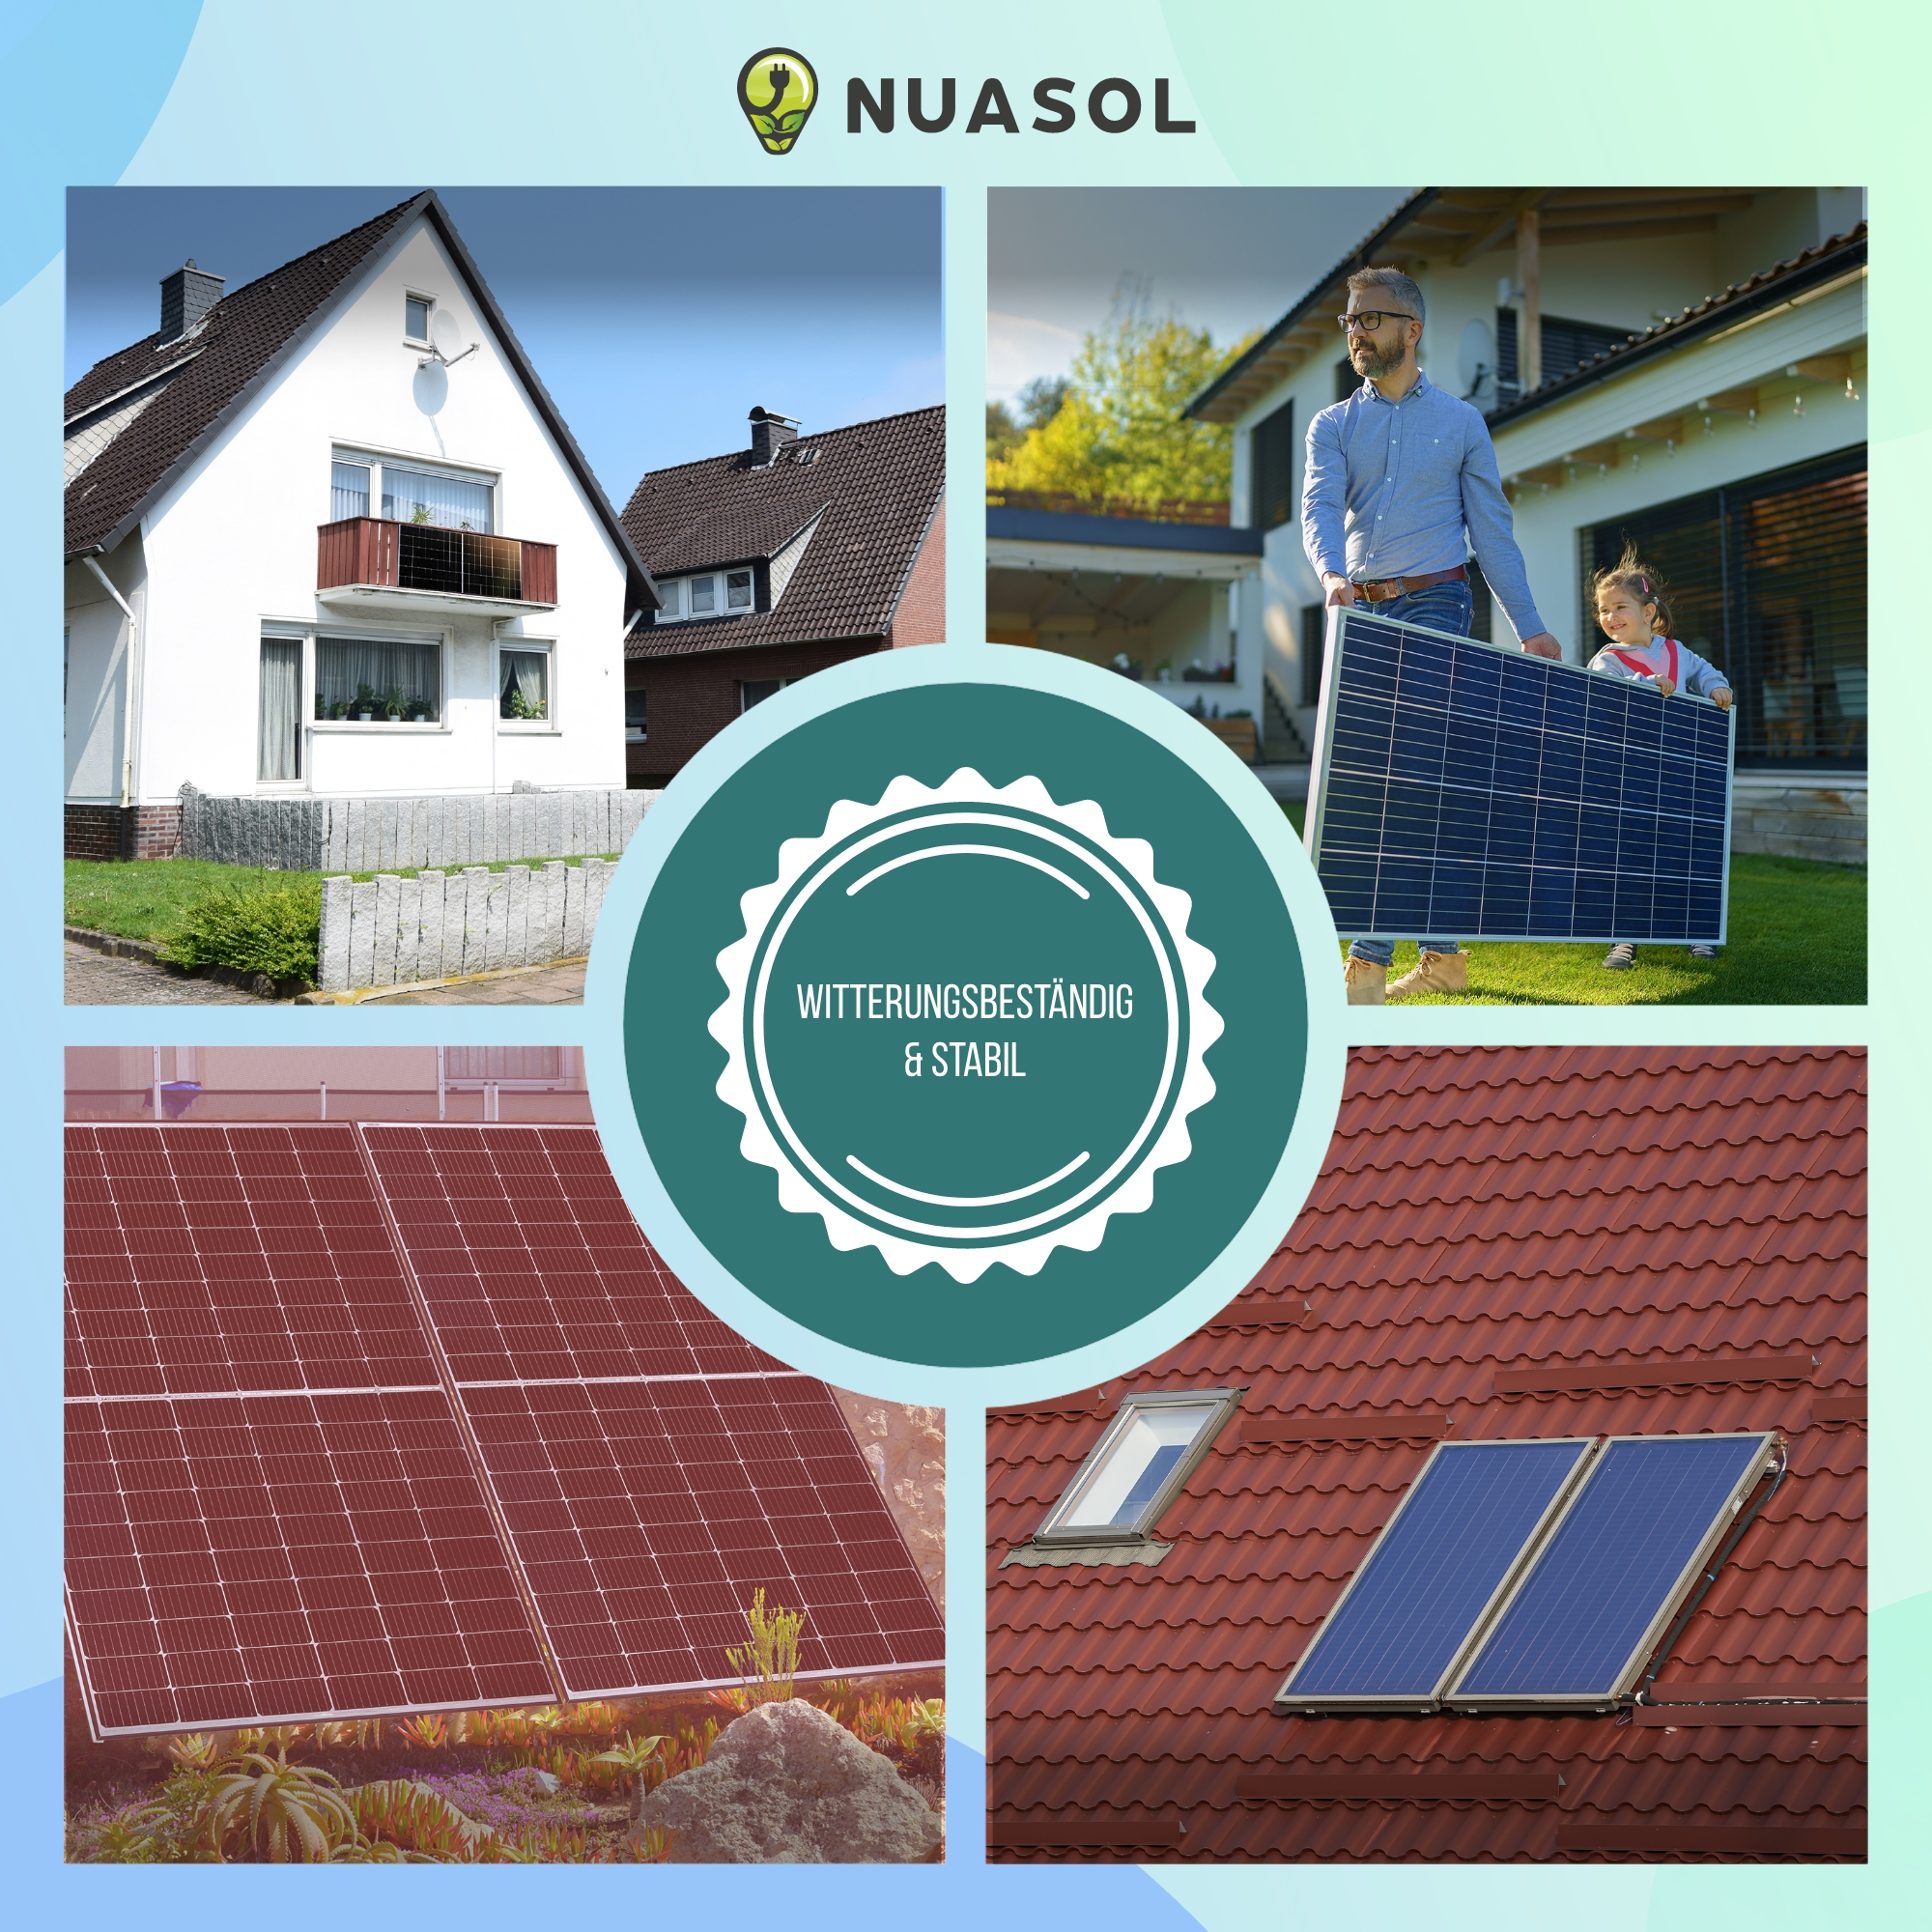 0-90° 118 cm | Solarpanel bis Solarmodul Verstellbar PV silber | NUASOL Set für Solarpaneel-Halterungen, 2er Flachdach Aufständerung